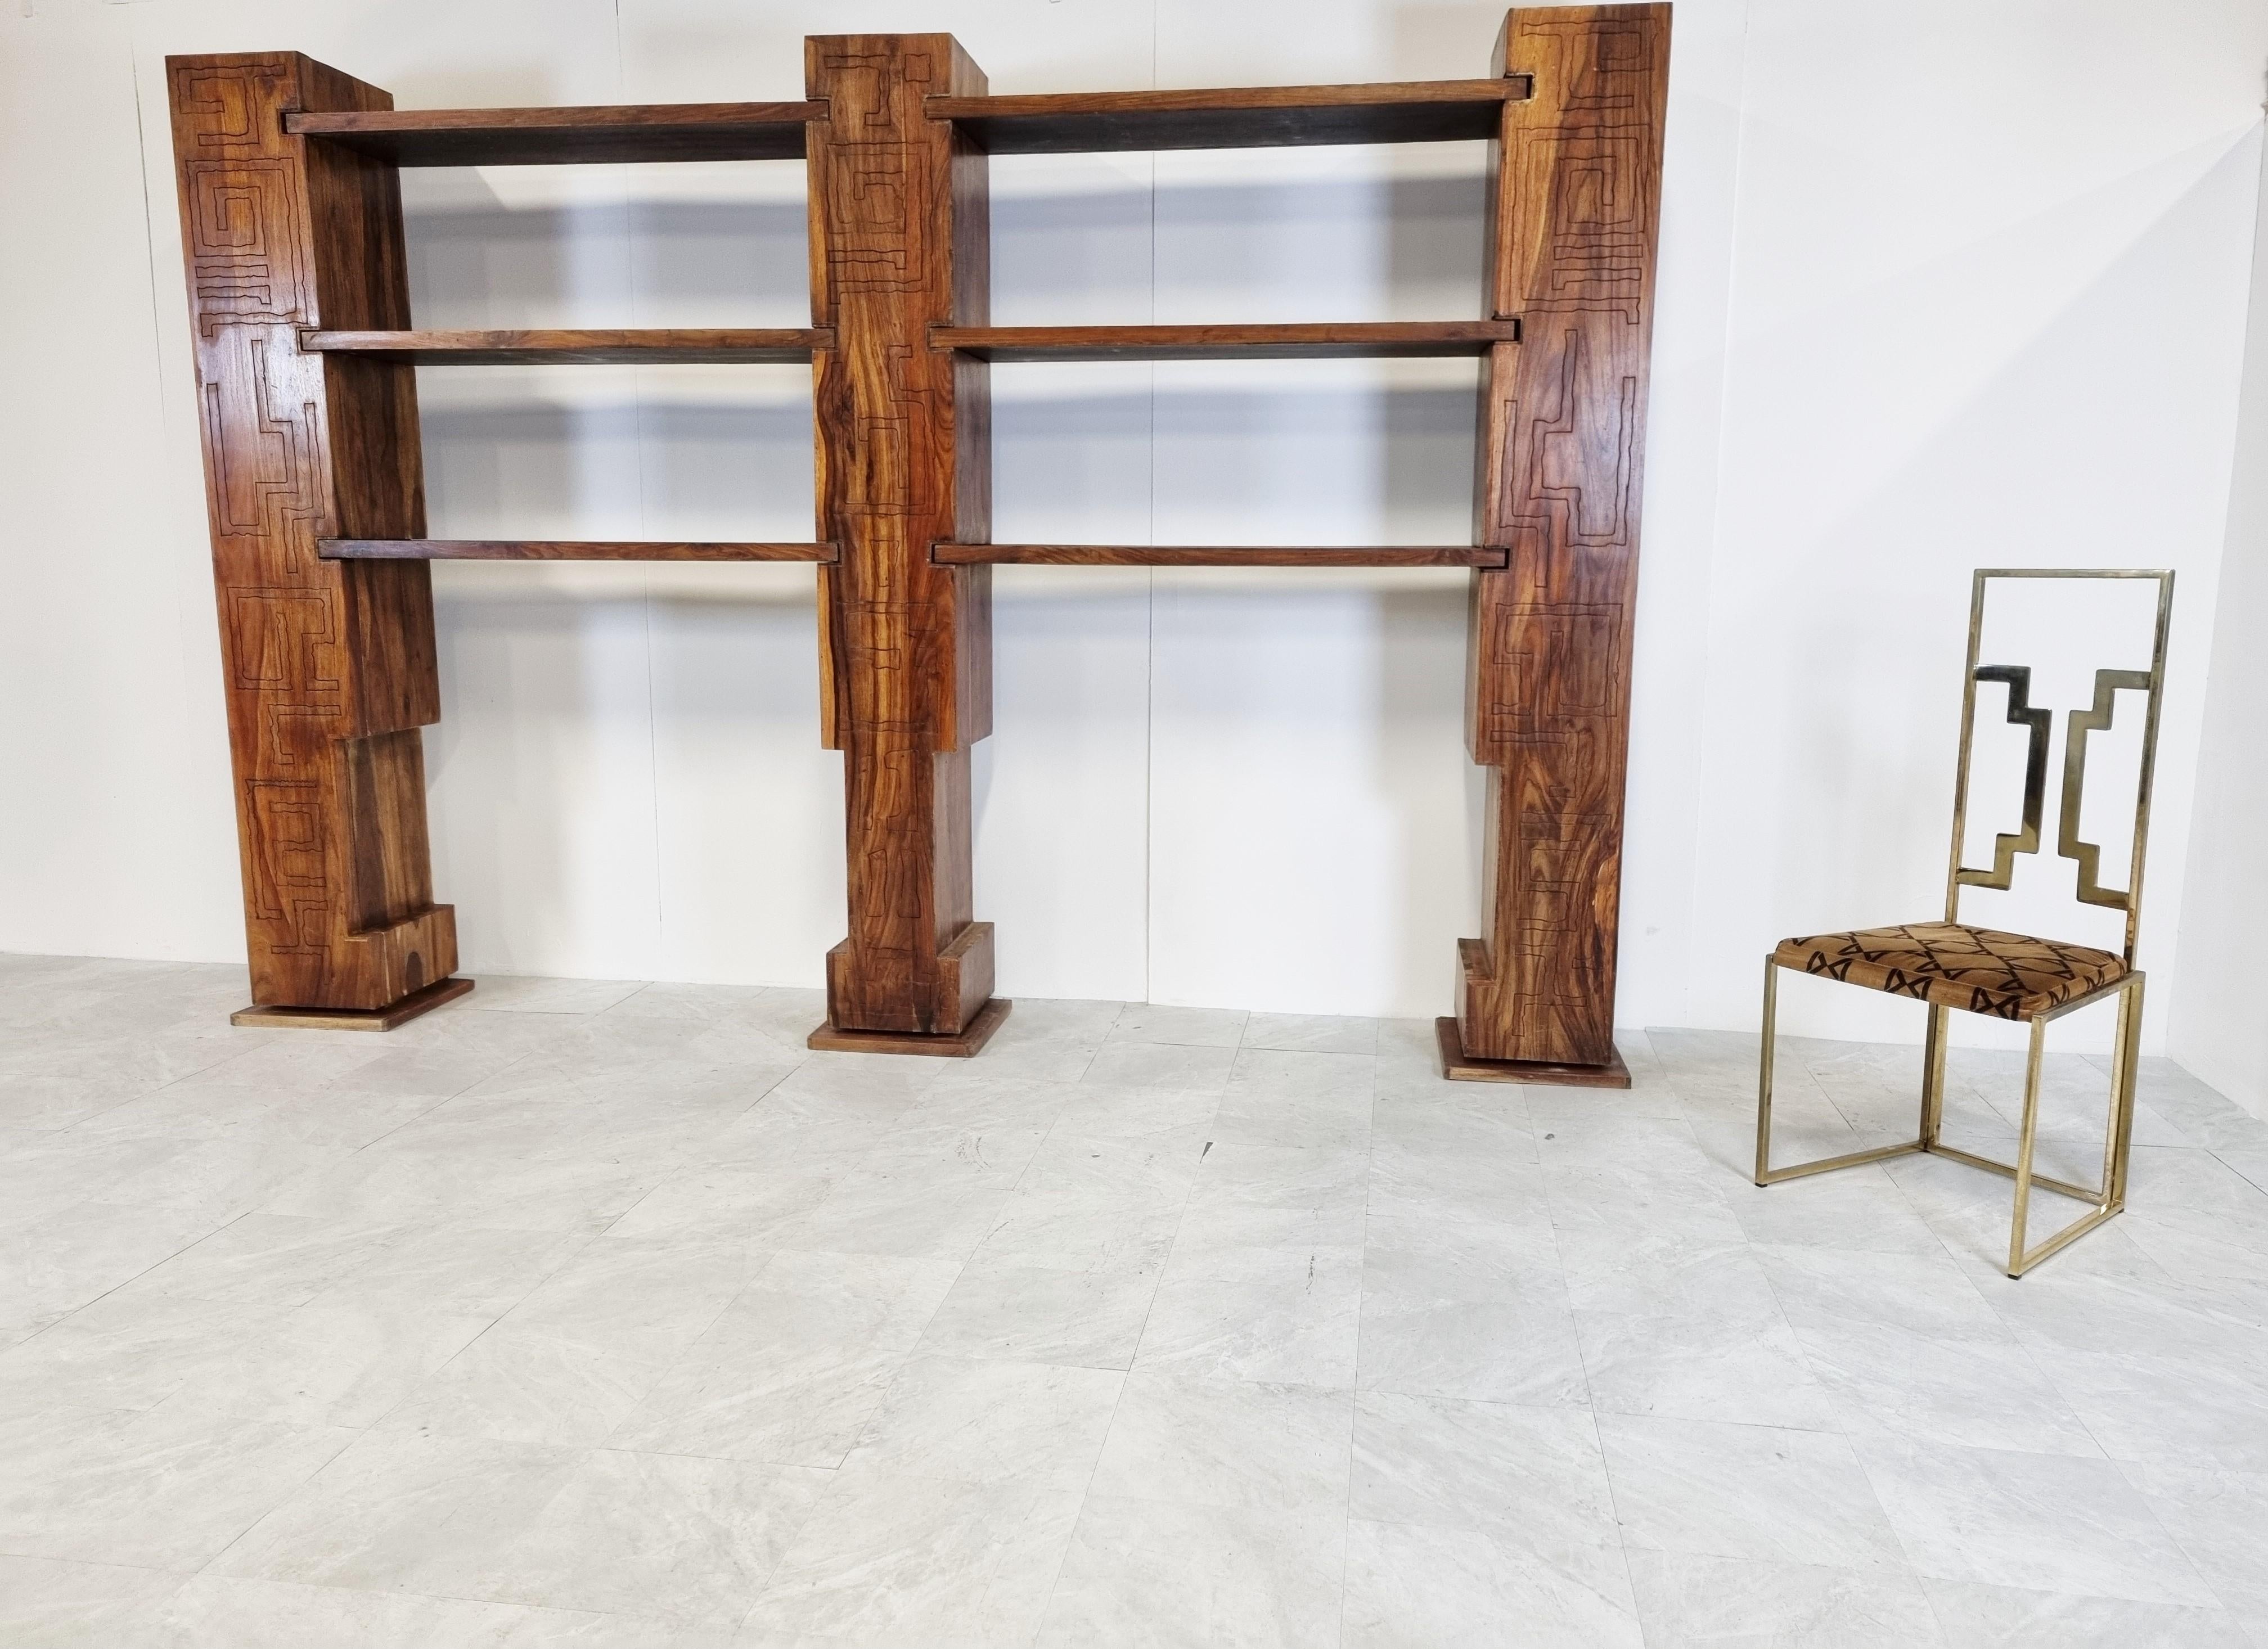 Brutalistische Schrankwand oder Bücherregal aus Massivholz im Stil von Paul Evans.

Die Schrankwand ist freistehend und besteht aus 3 geschnitzten Holzständern, von denen zwei Türen und ineinander greifende Regale haben, die viel Stauraum